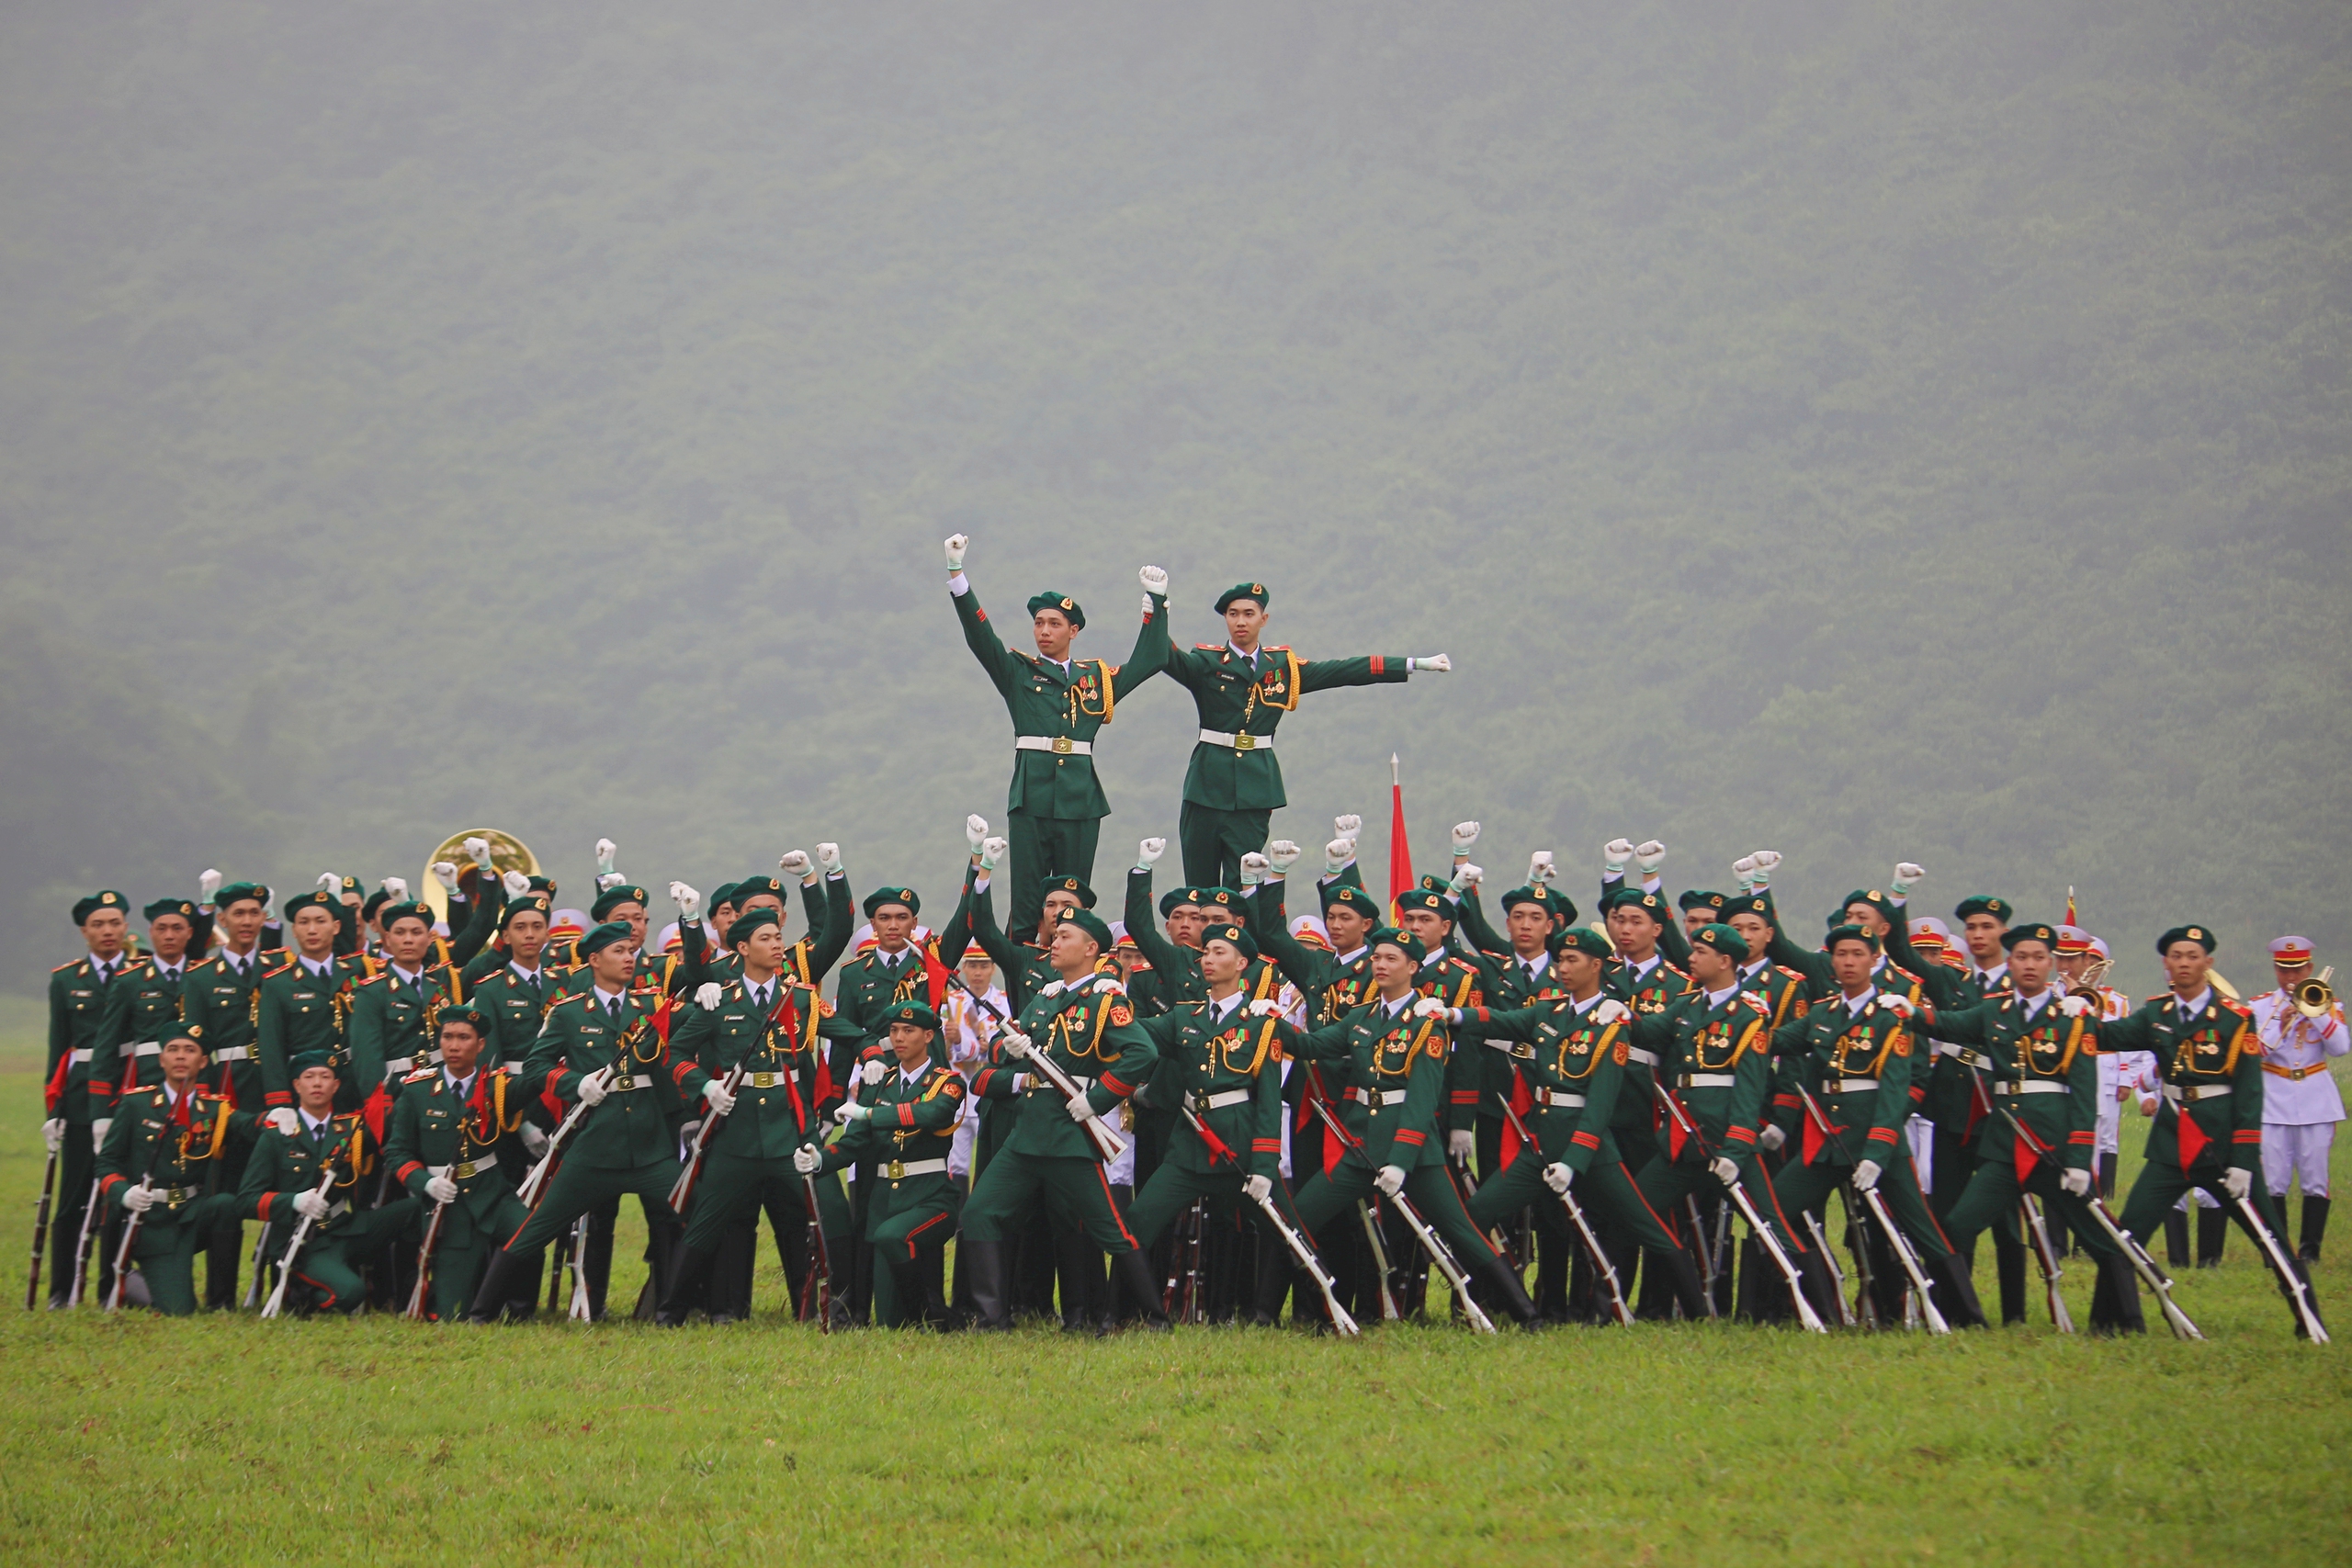 Phần trình diễn đầu tiên kéo dài khoảng 20 phút của Đoàn Nghi lễ quân đội, trước khi diễn ra diễu binh, diễu hành